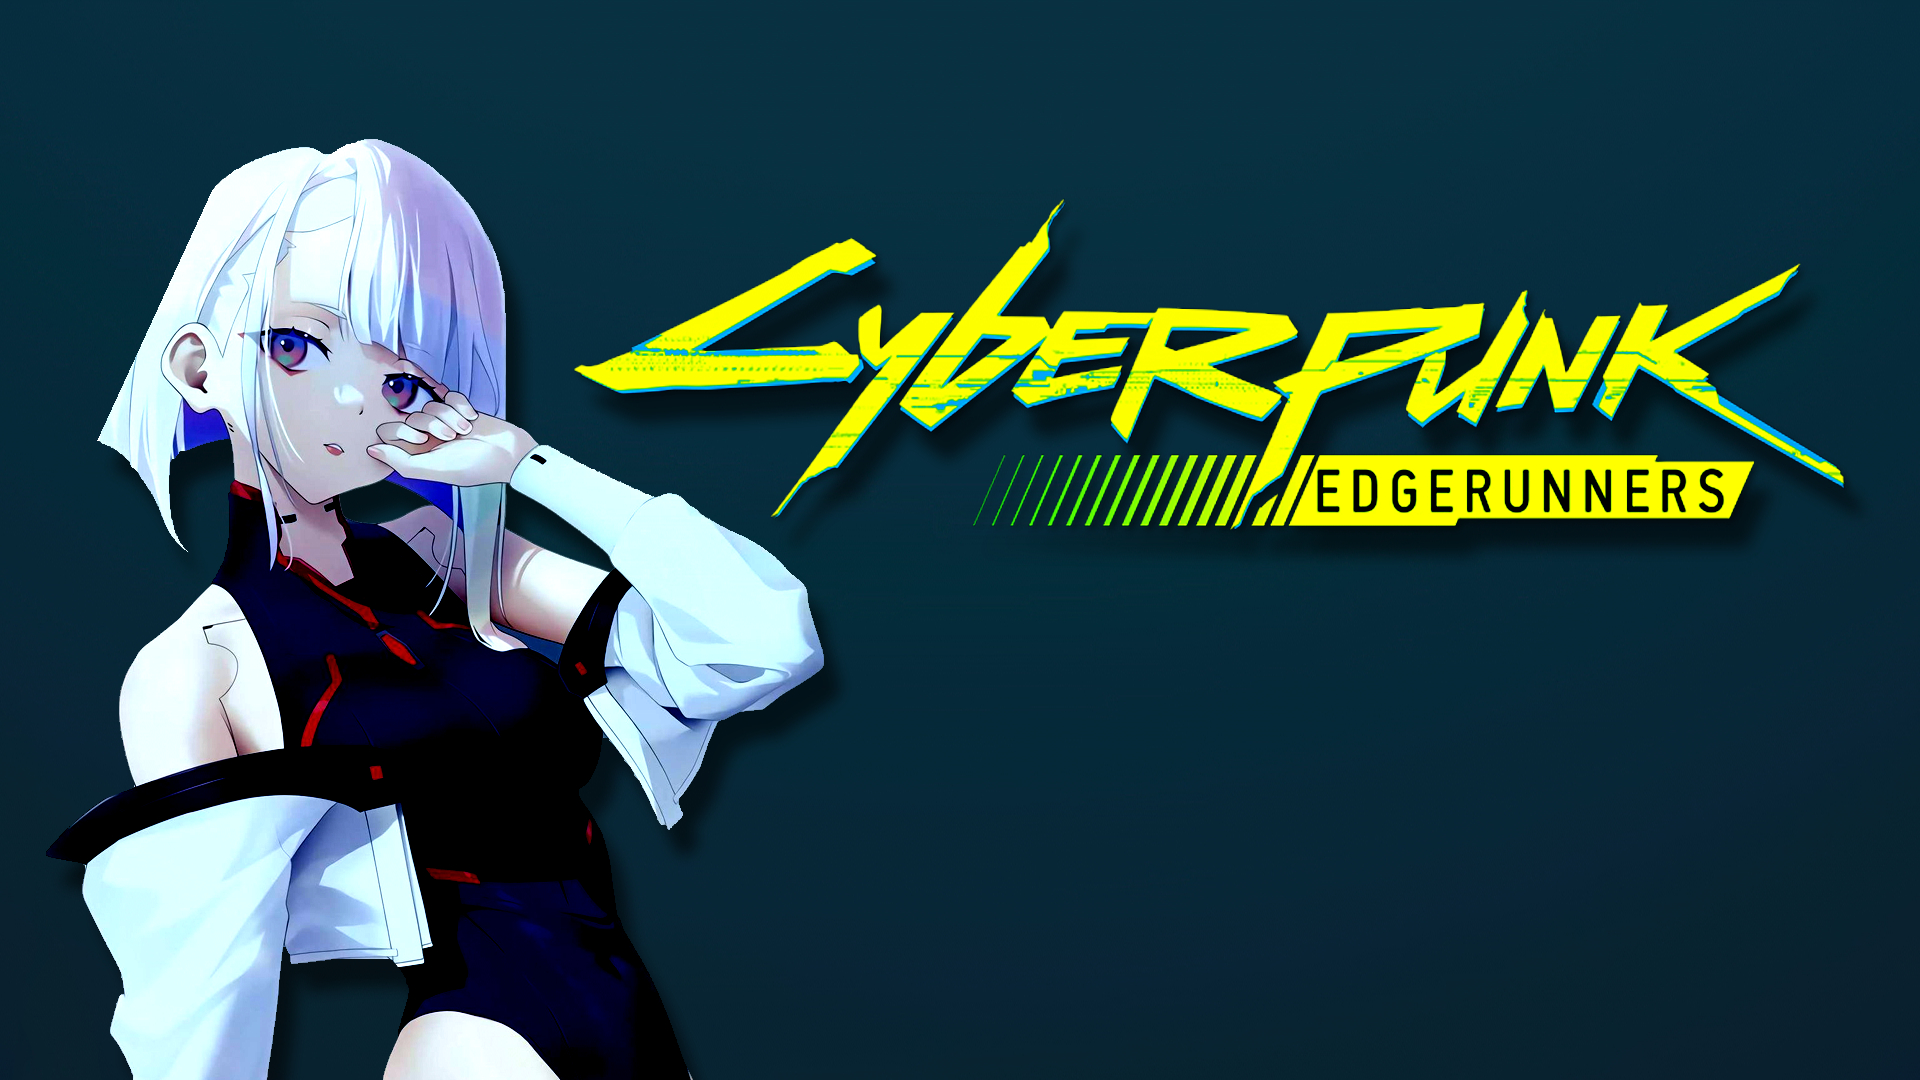 HD wallpaper: Cyberpunk: edgerunners, anime girls, lucy (edgerunners),  david (edgerunners)